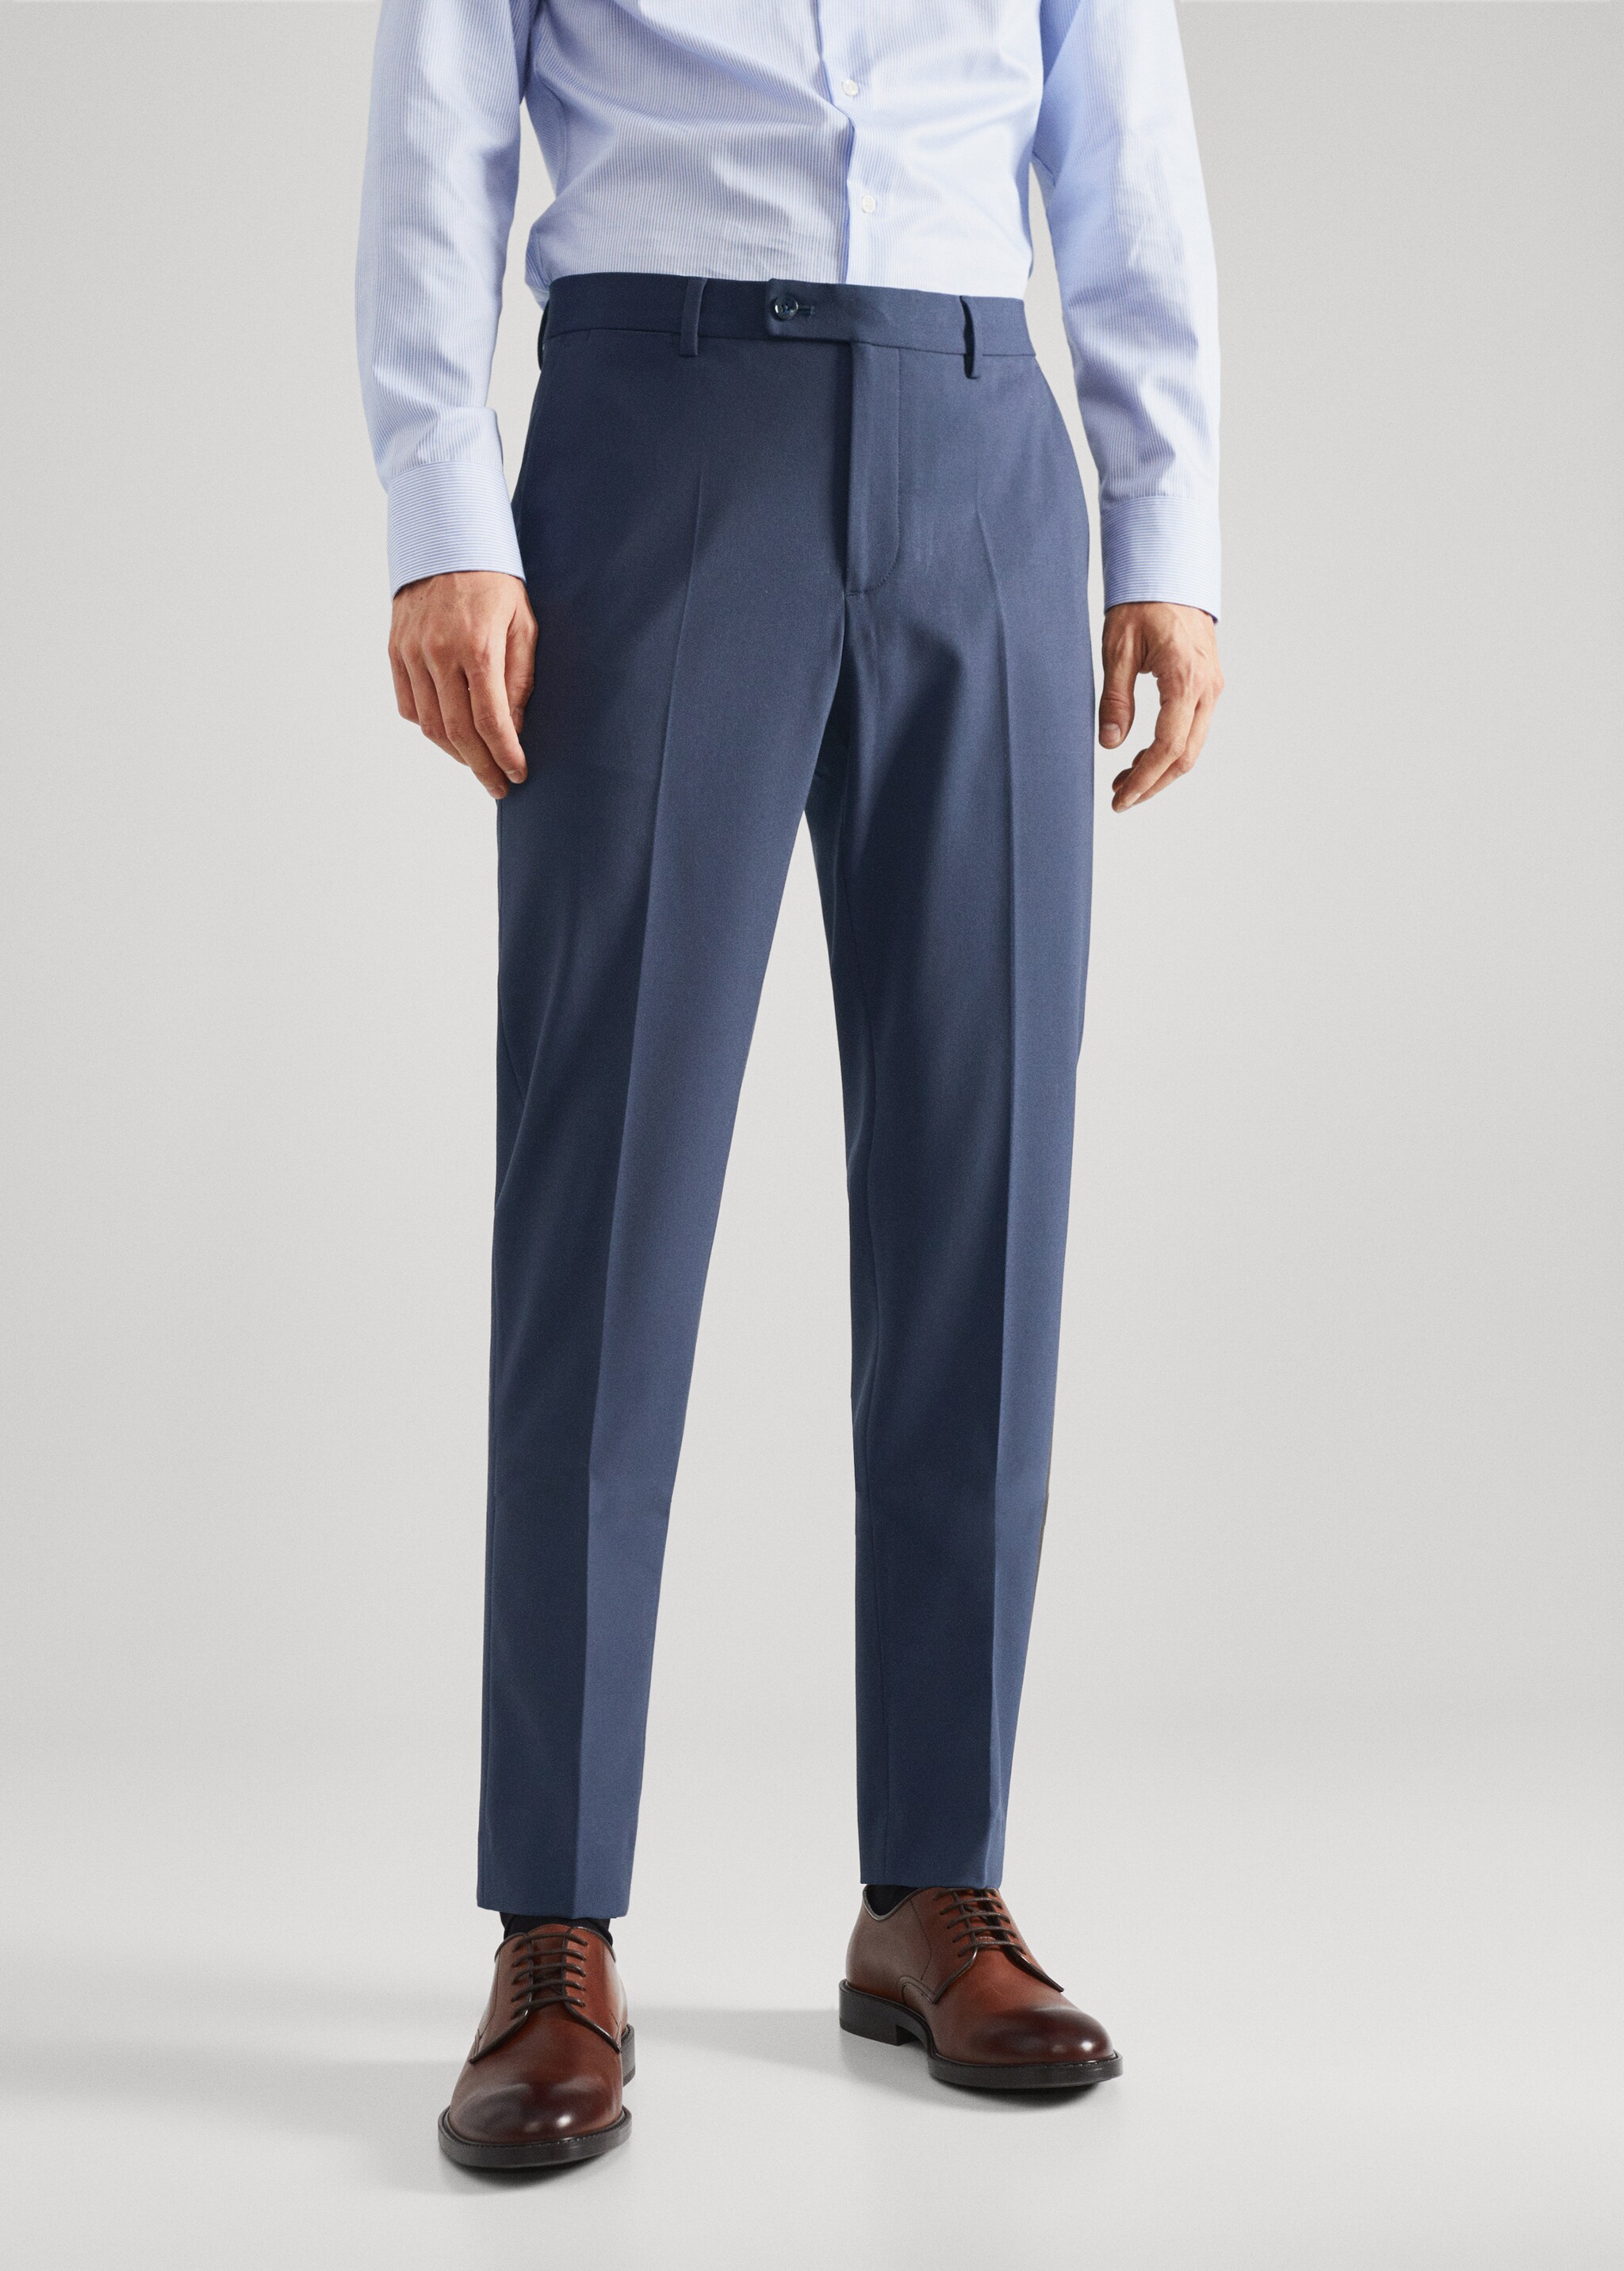  Suit trousers - Medium plane